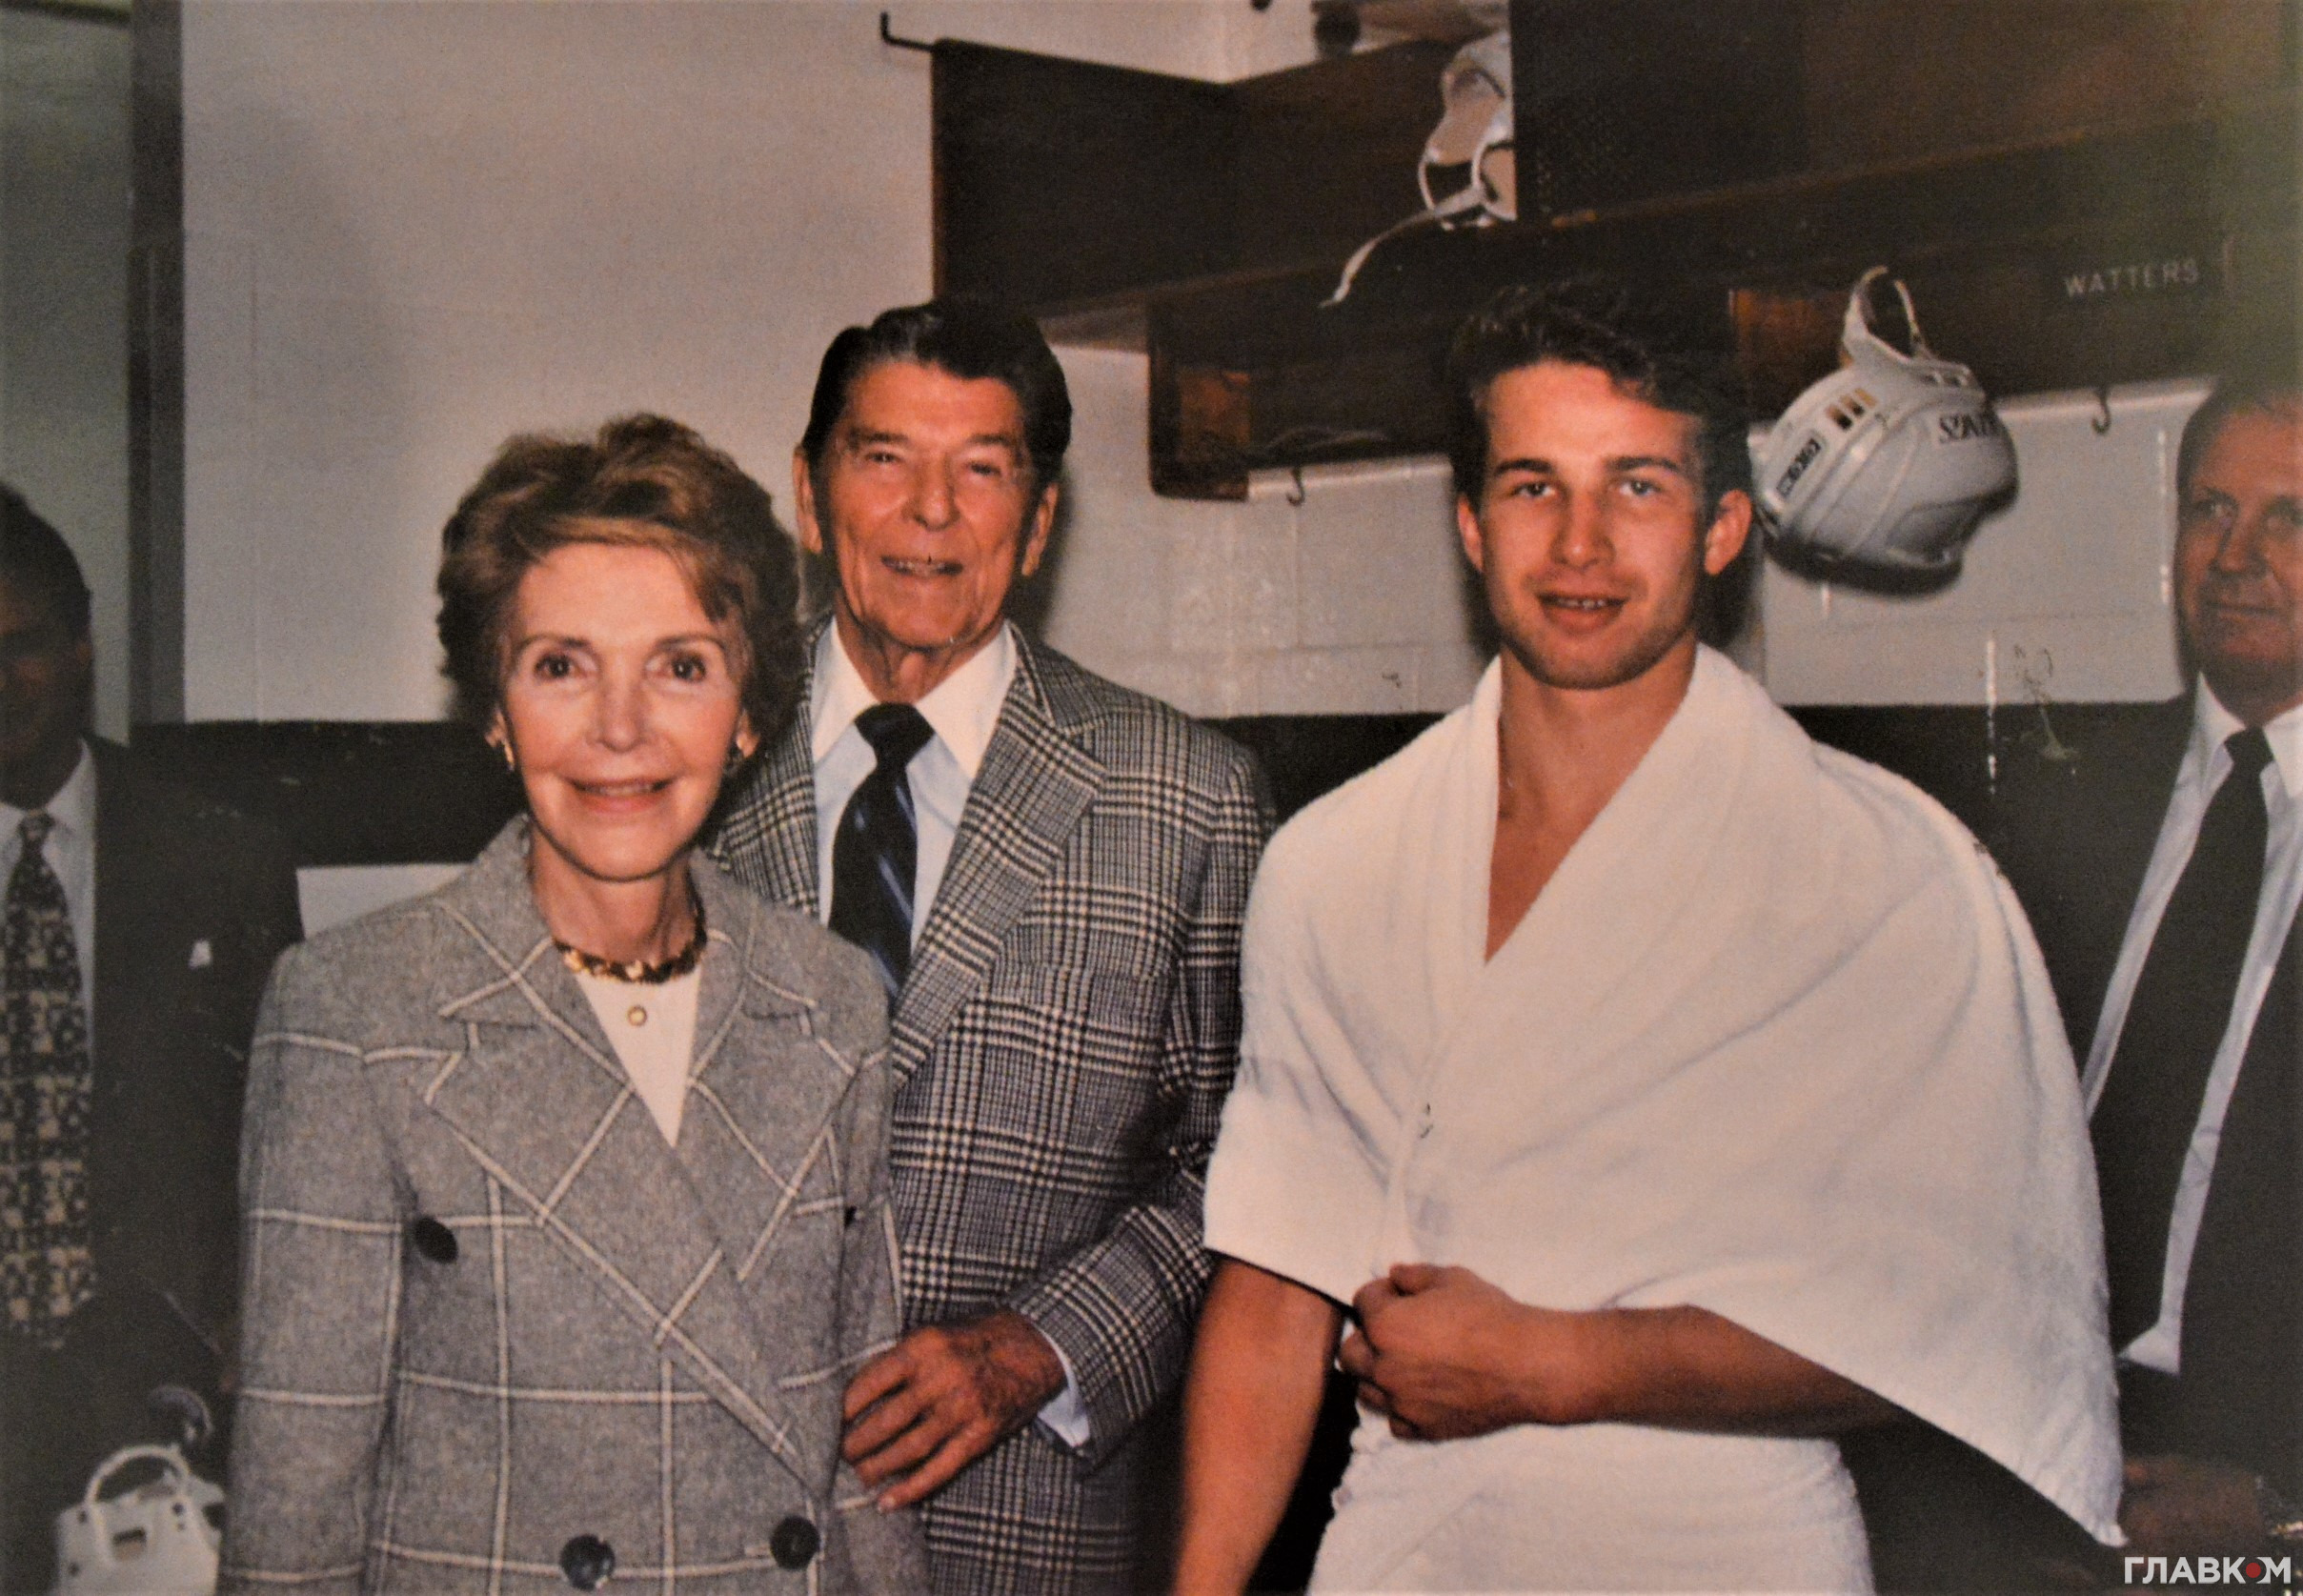 Олексій Житник під час зустрічі з президентом США Рональдом Рейганом... у рушнику